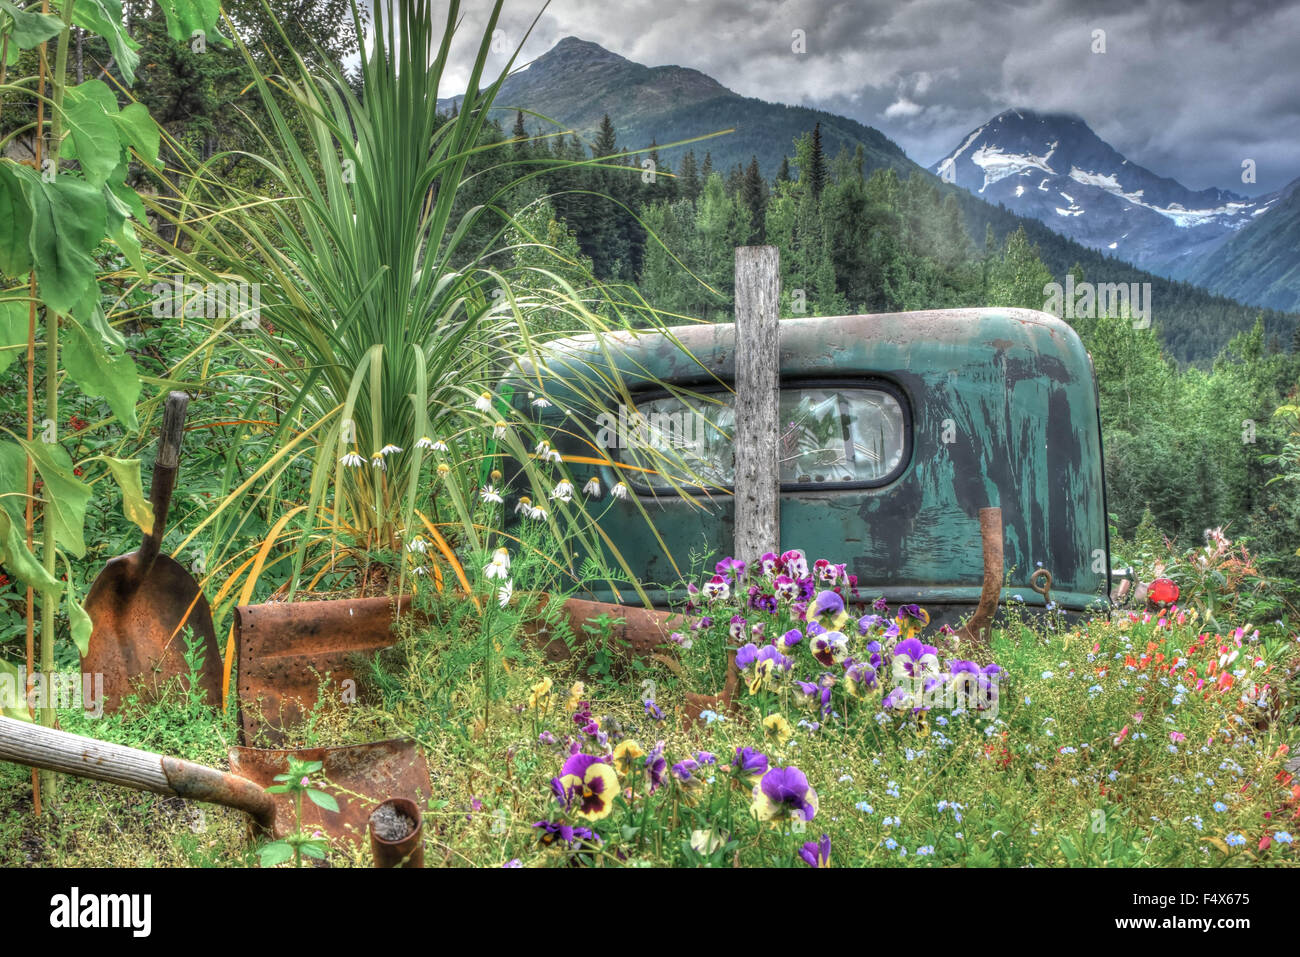 Eine alte/antike Lkw mit einem gebrochenen Fenster ist mit Pflanzen und Blumen bewachsen. Eine getrübte Bergkette in der Ferne zu sehen ist. Stockfoto